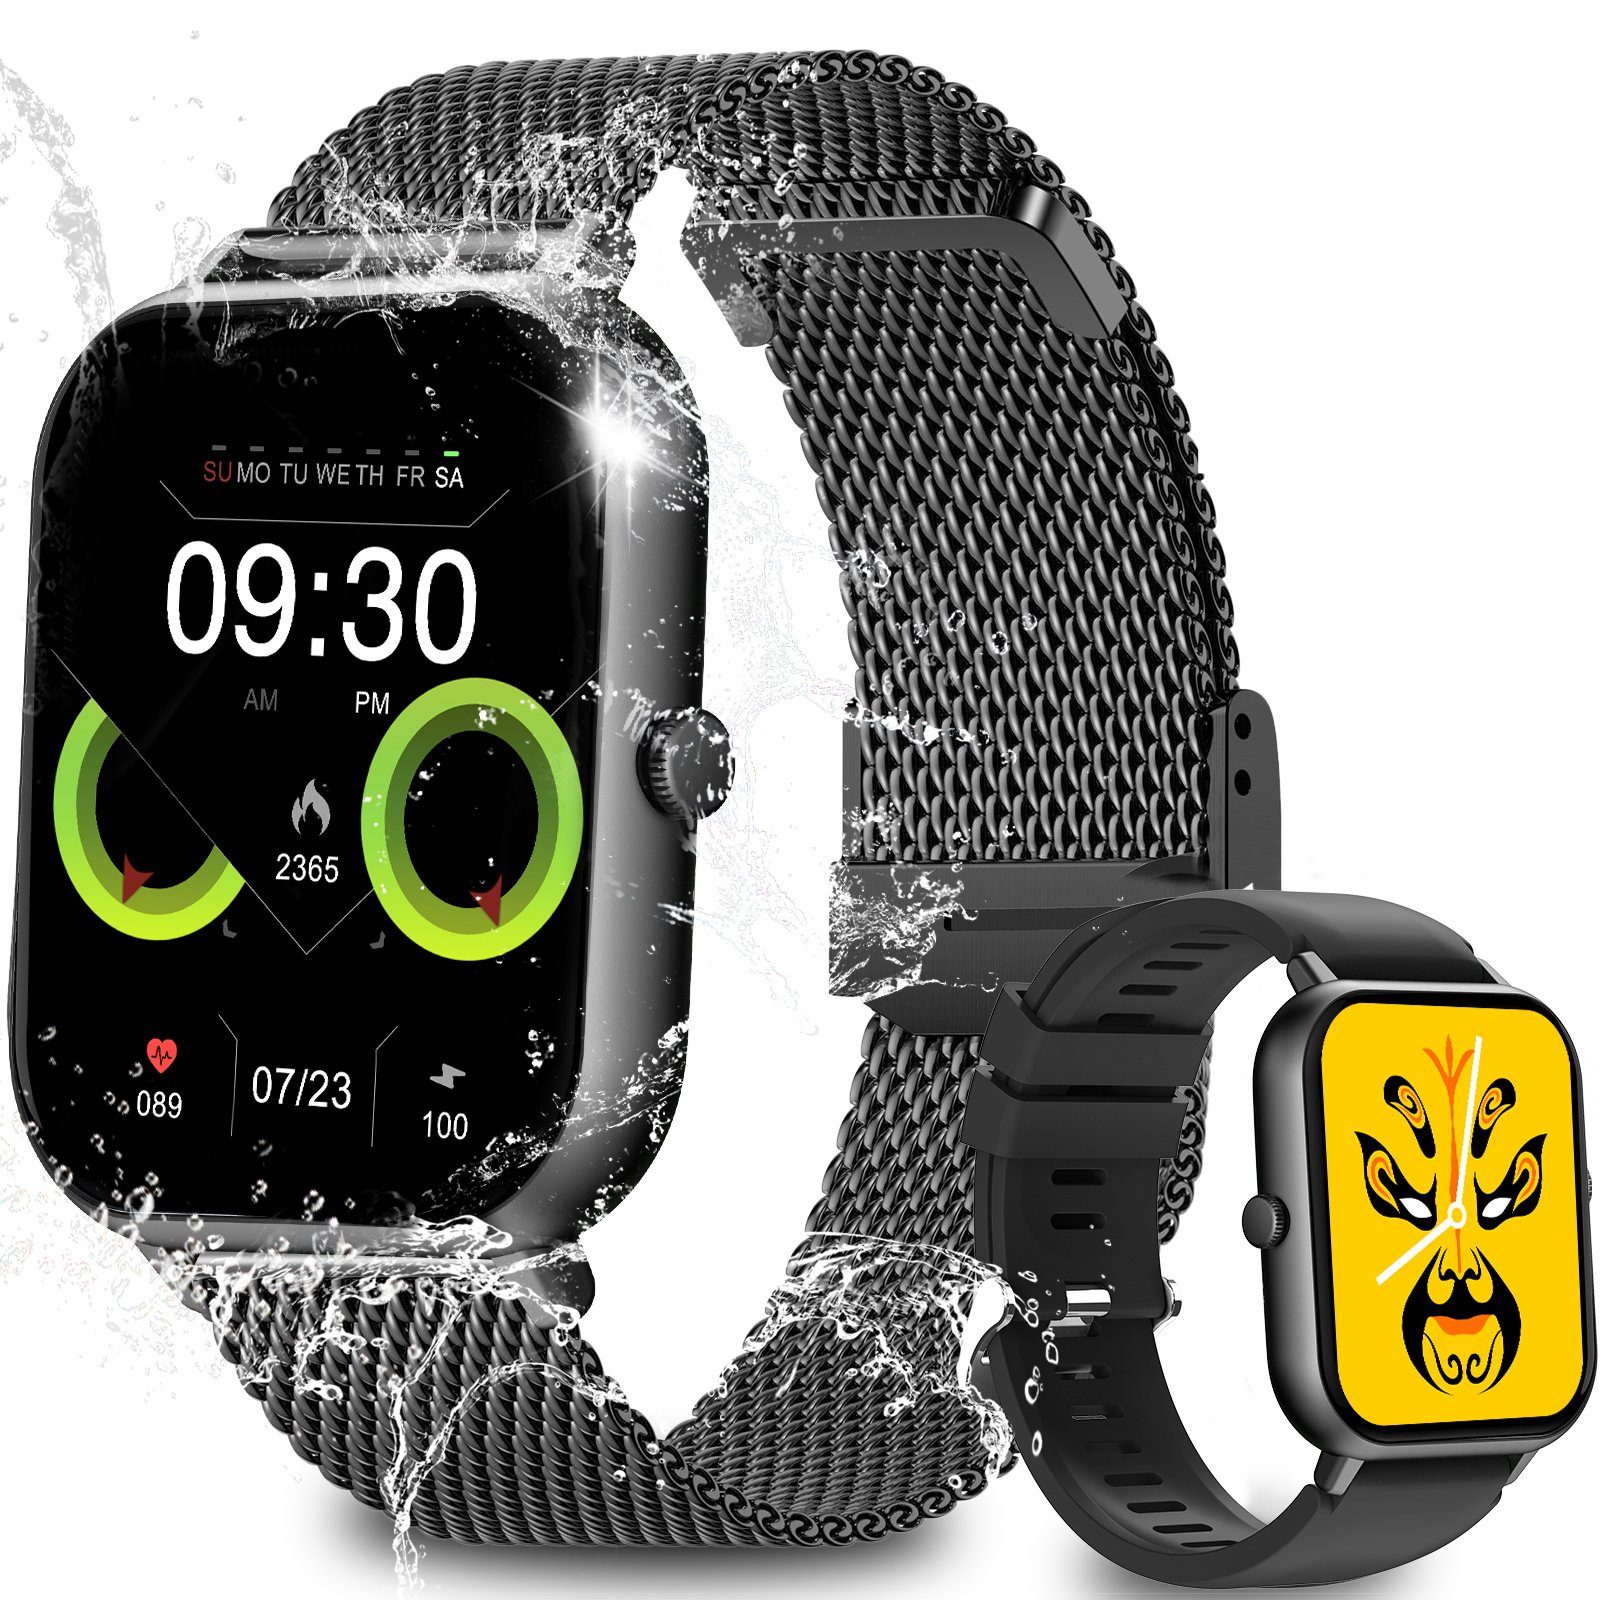 Yuede Smartwatch, Fitness Tracker uhr mit Anruffunktion für Damen und Herren Smartwatch (Quadratischer 1,85%27%27-Voll-Touch-Farbdisplay Zoll Zoll) Gesundheits-Smartwatch mit Blutsauerstoff, Blutdruckmessung, Herzfrequenz, Schlafqualität, Schrittzähler, Atemtraining, Musiksteuerung und Fernfotografie etc., IP67 wasserdichte Sportuhr mit mehr als 50 Sportmodi und Doppelriemen, für Android IOS